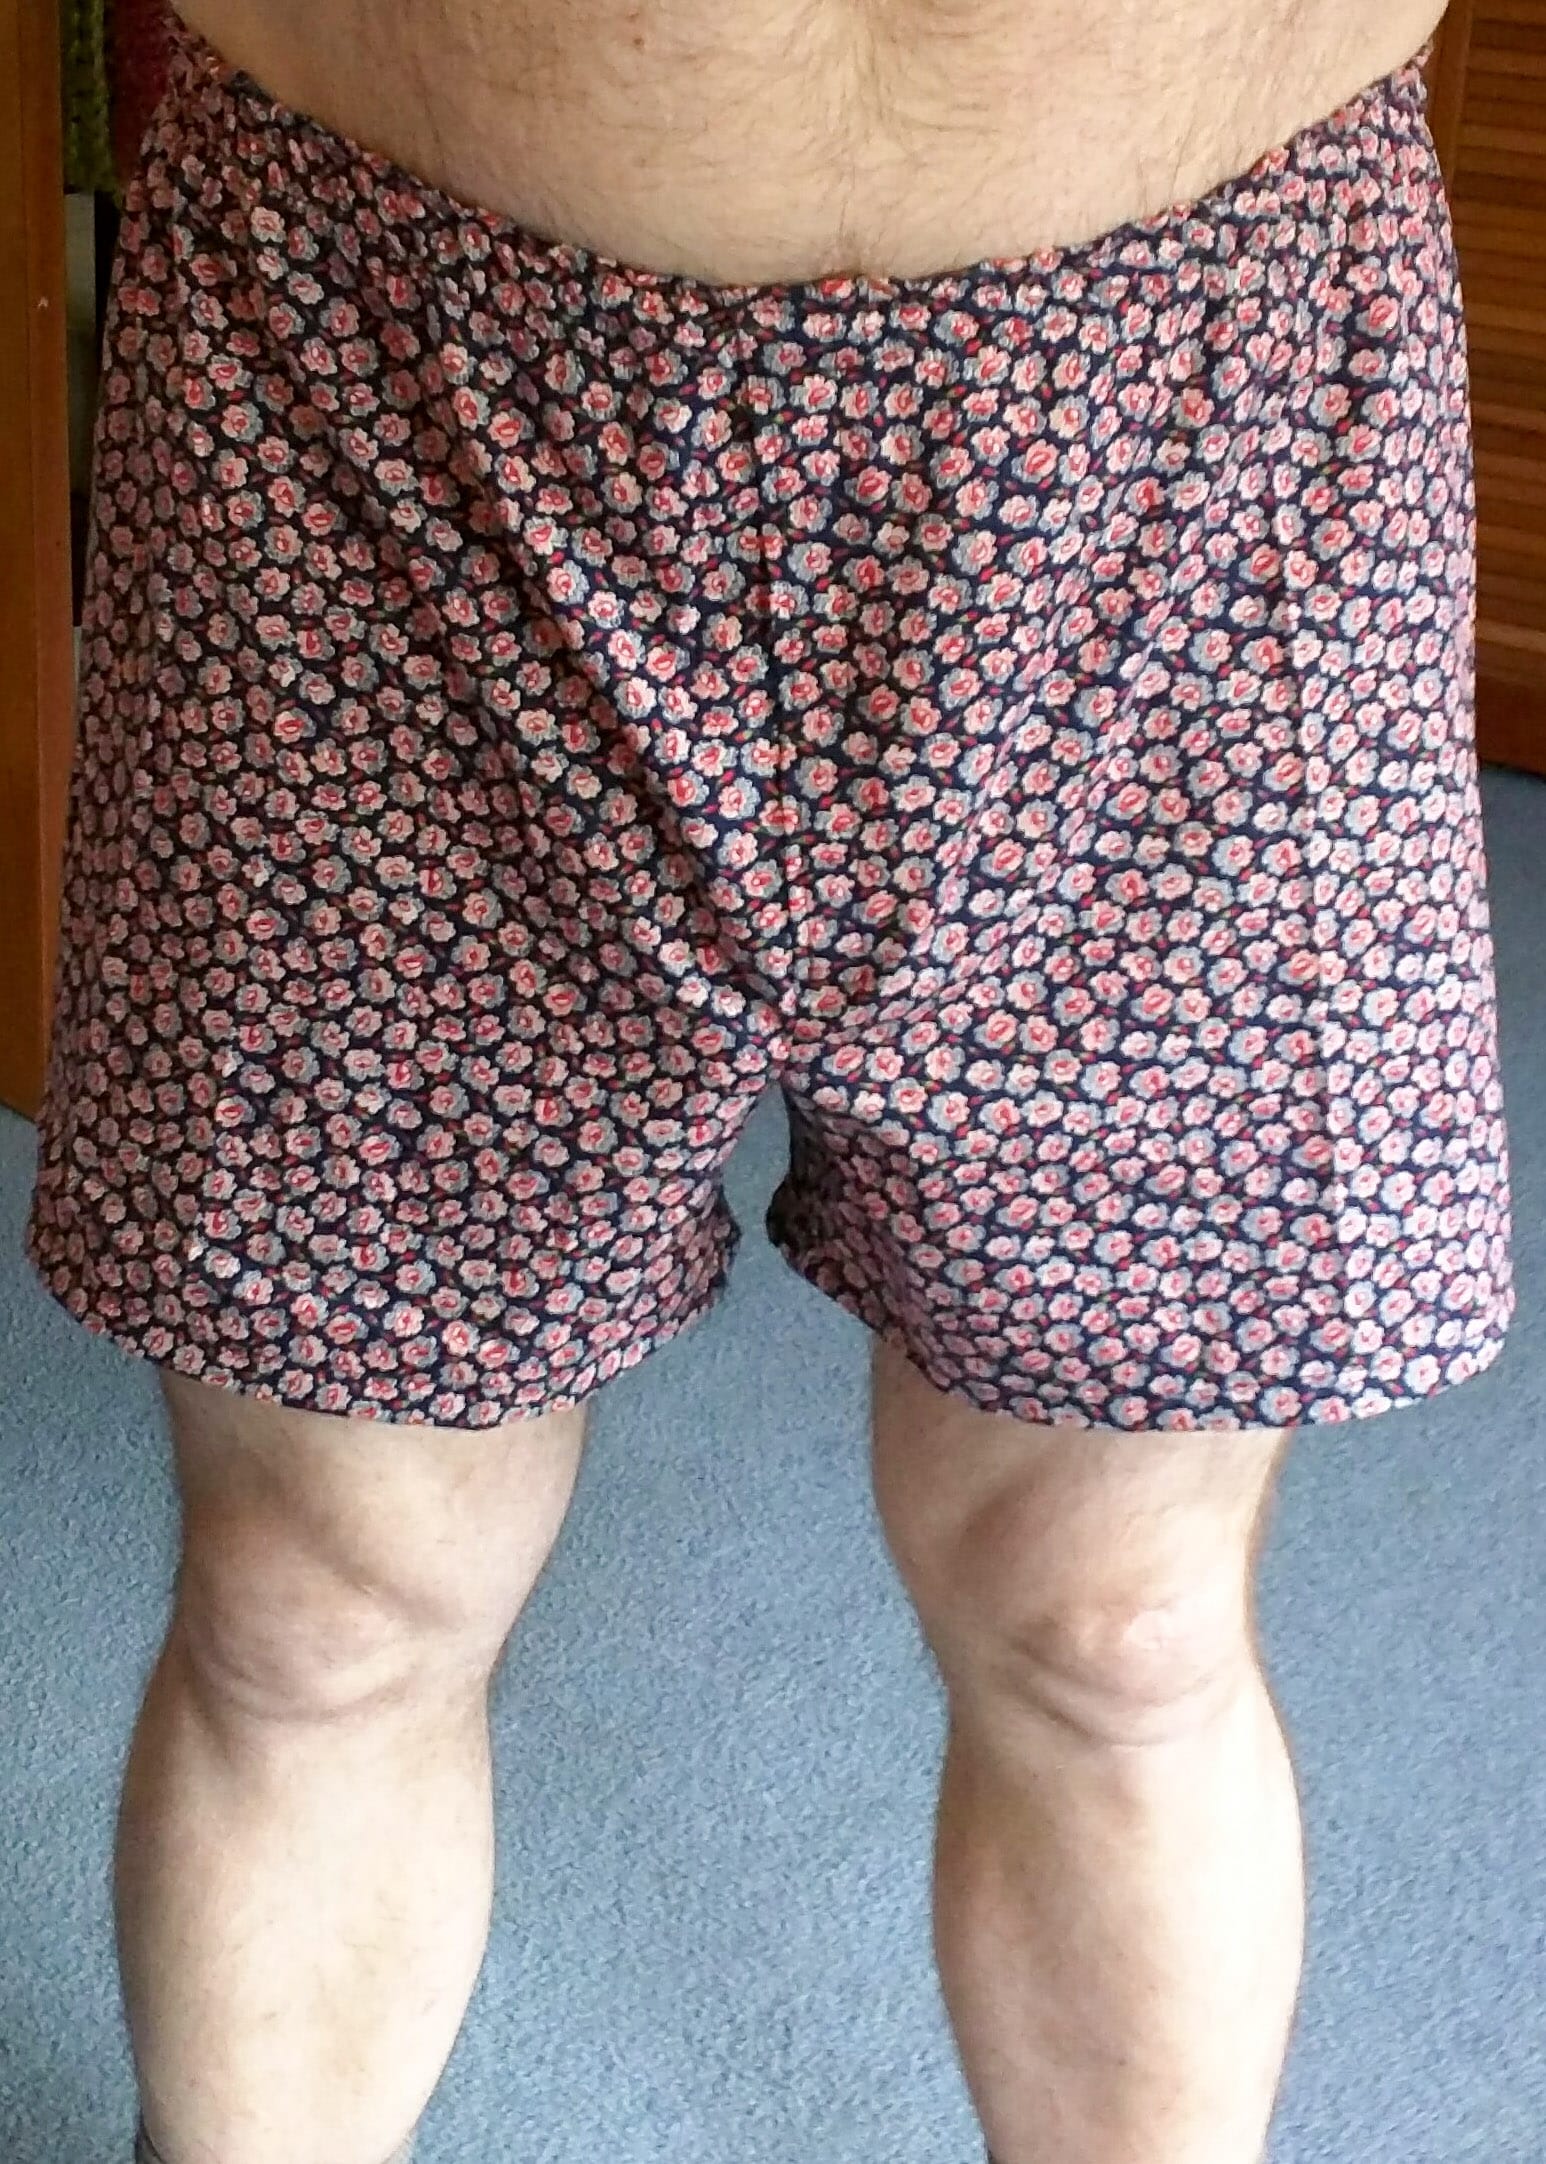 Boxer Shorts in colour velvet tendrils from the Fancy Woven